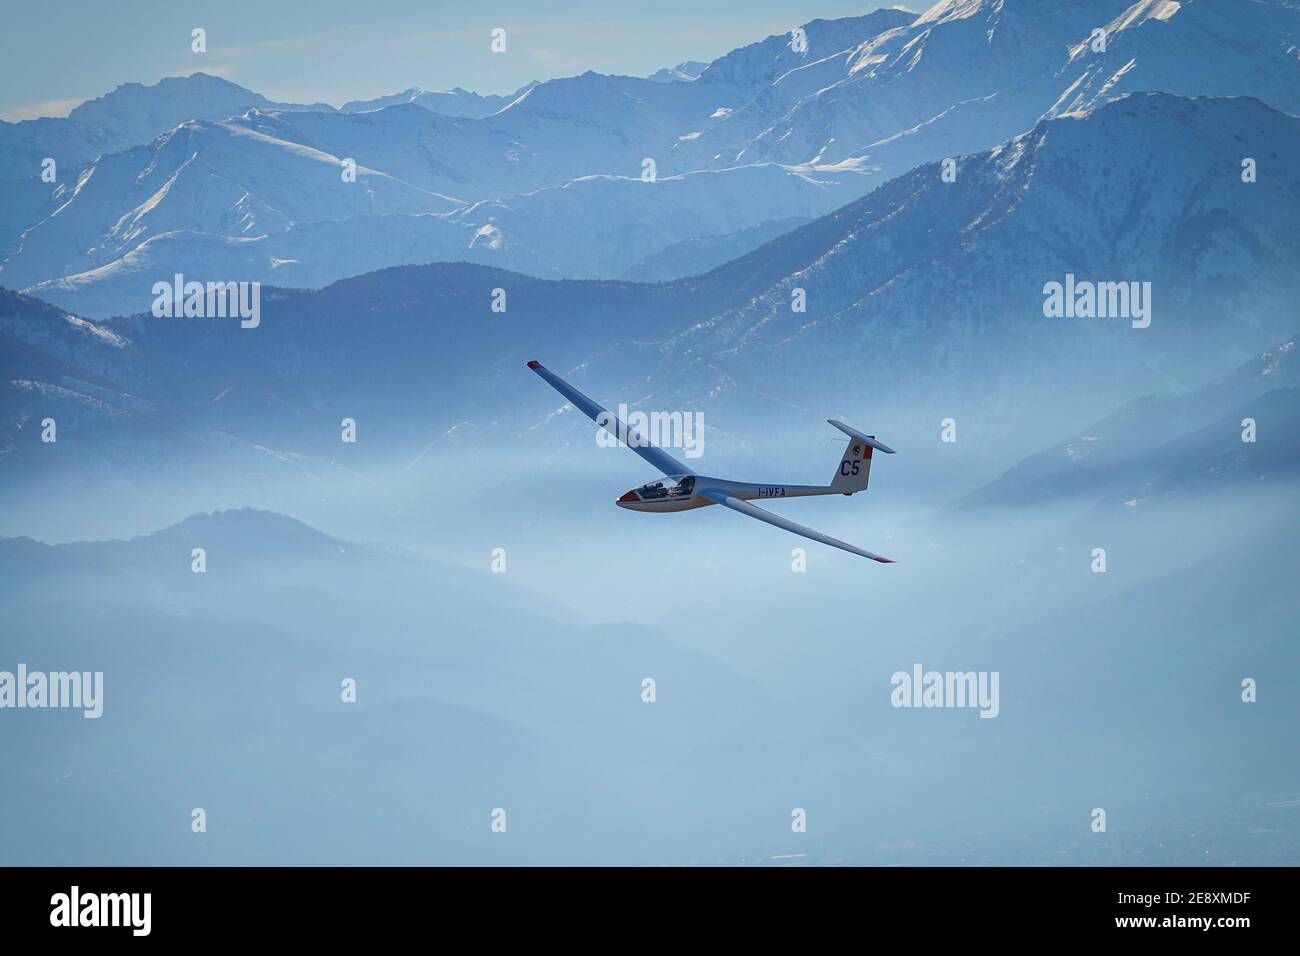 Planeur en vol entre les montagnes enneigées vues d'en haut. Susa, Italie - janvier 2021 Banque D'Images